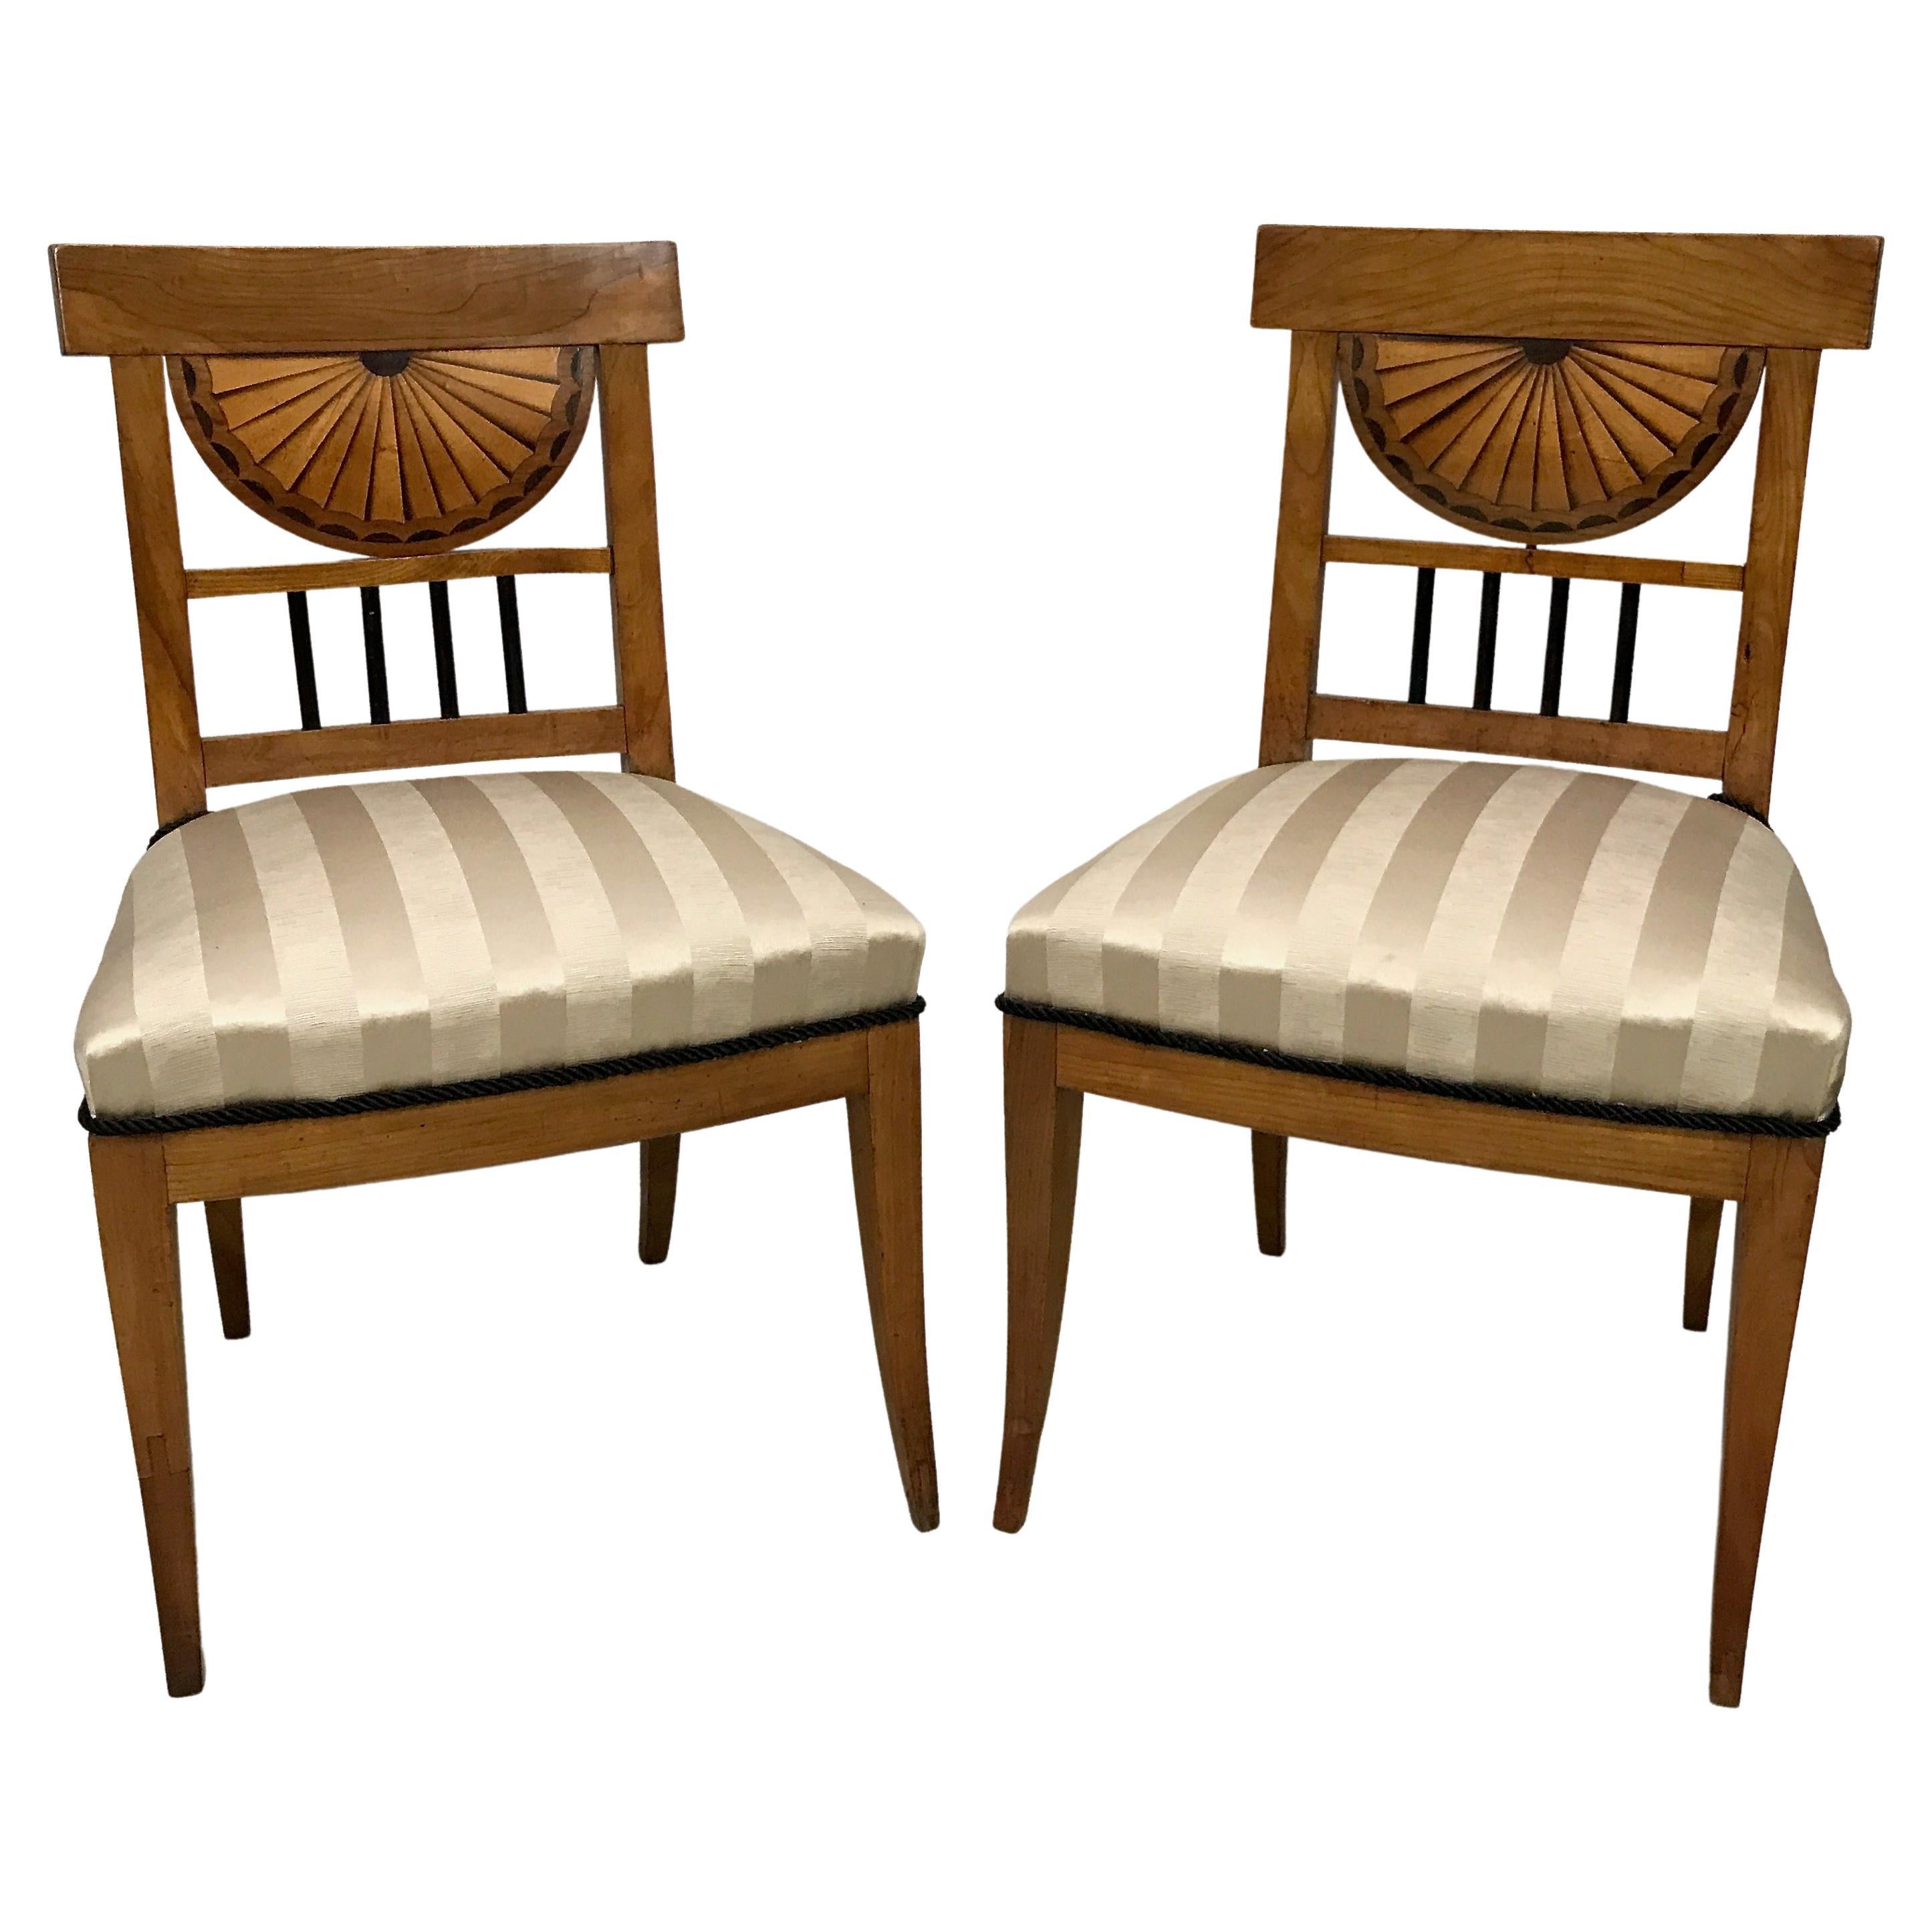 Pair of Cherrywood Biedermeier Side Chairs, European Early 19th Century